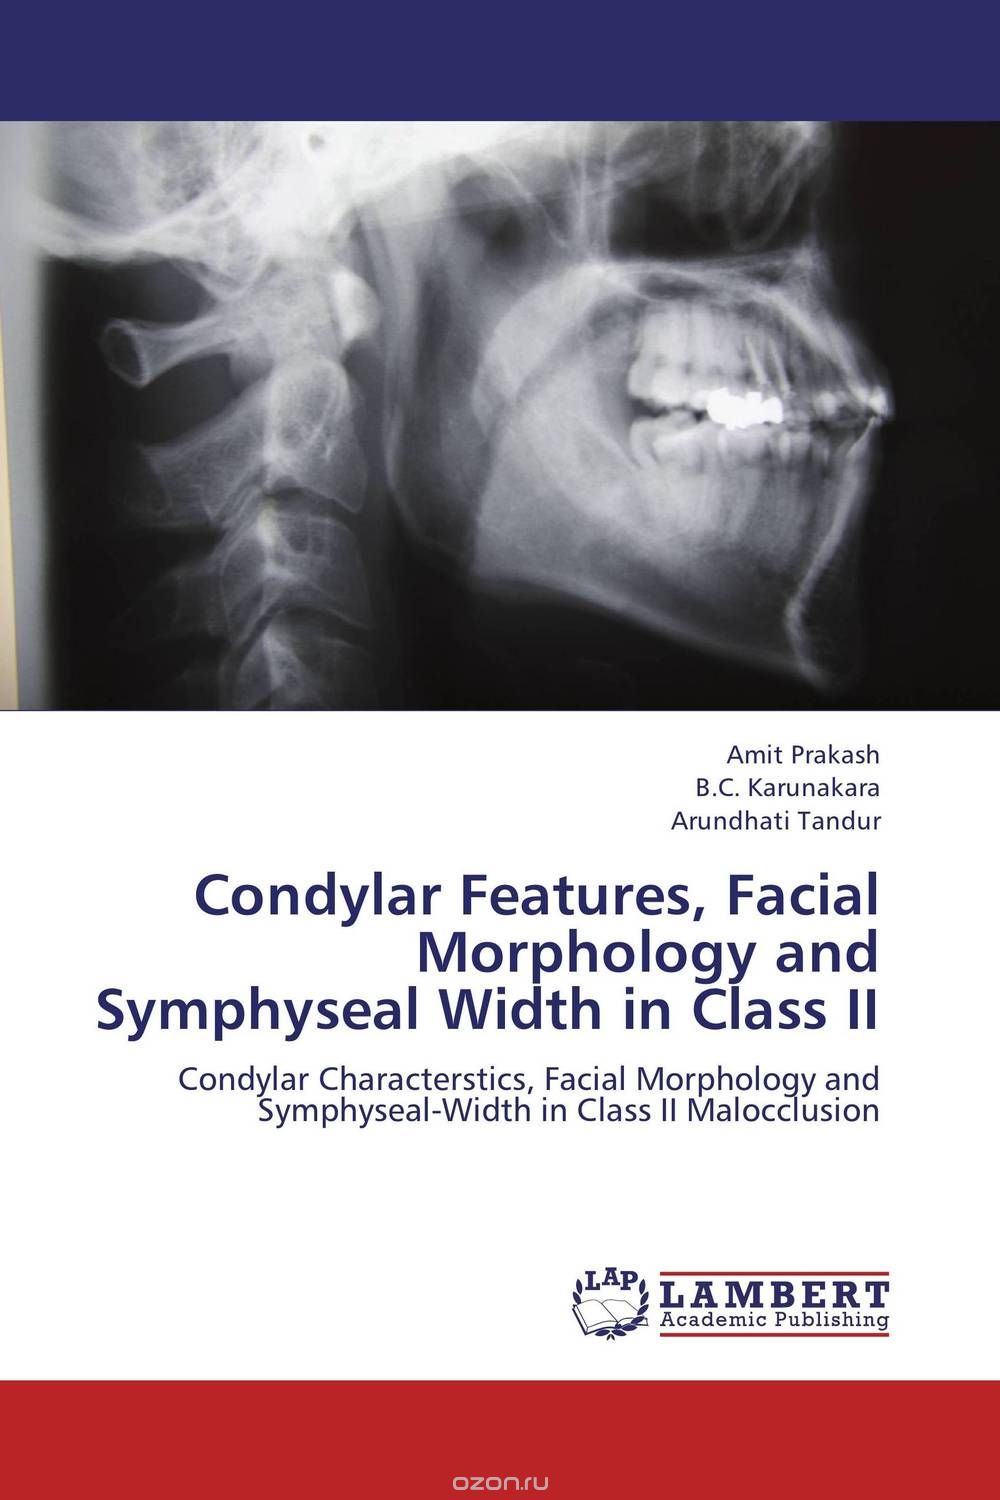 Скачать книгу "Condylar Features, Facial Morphology and Symphyseal Width in Class II"